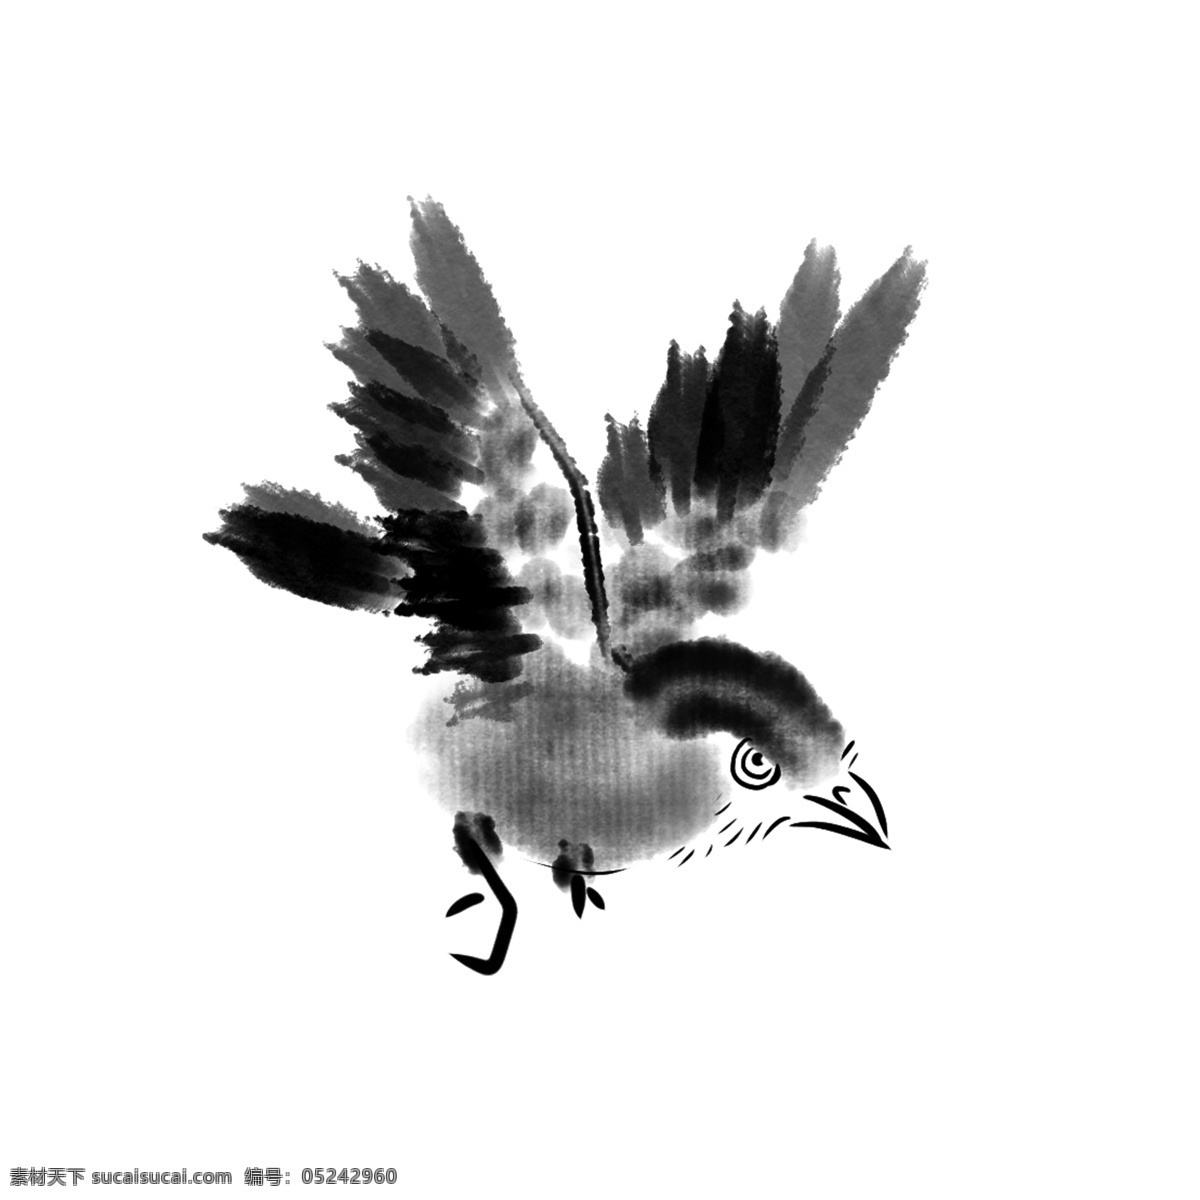 黑色 水墨 飞鸟 插画 黑色的飞鸟 鸟翅膀 飞行 鸟爪 动物 飞禽 捕食 猎物 艺术 水墨飞鸟插画